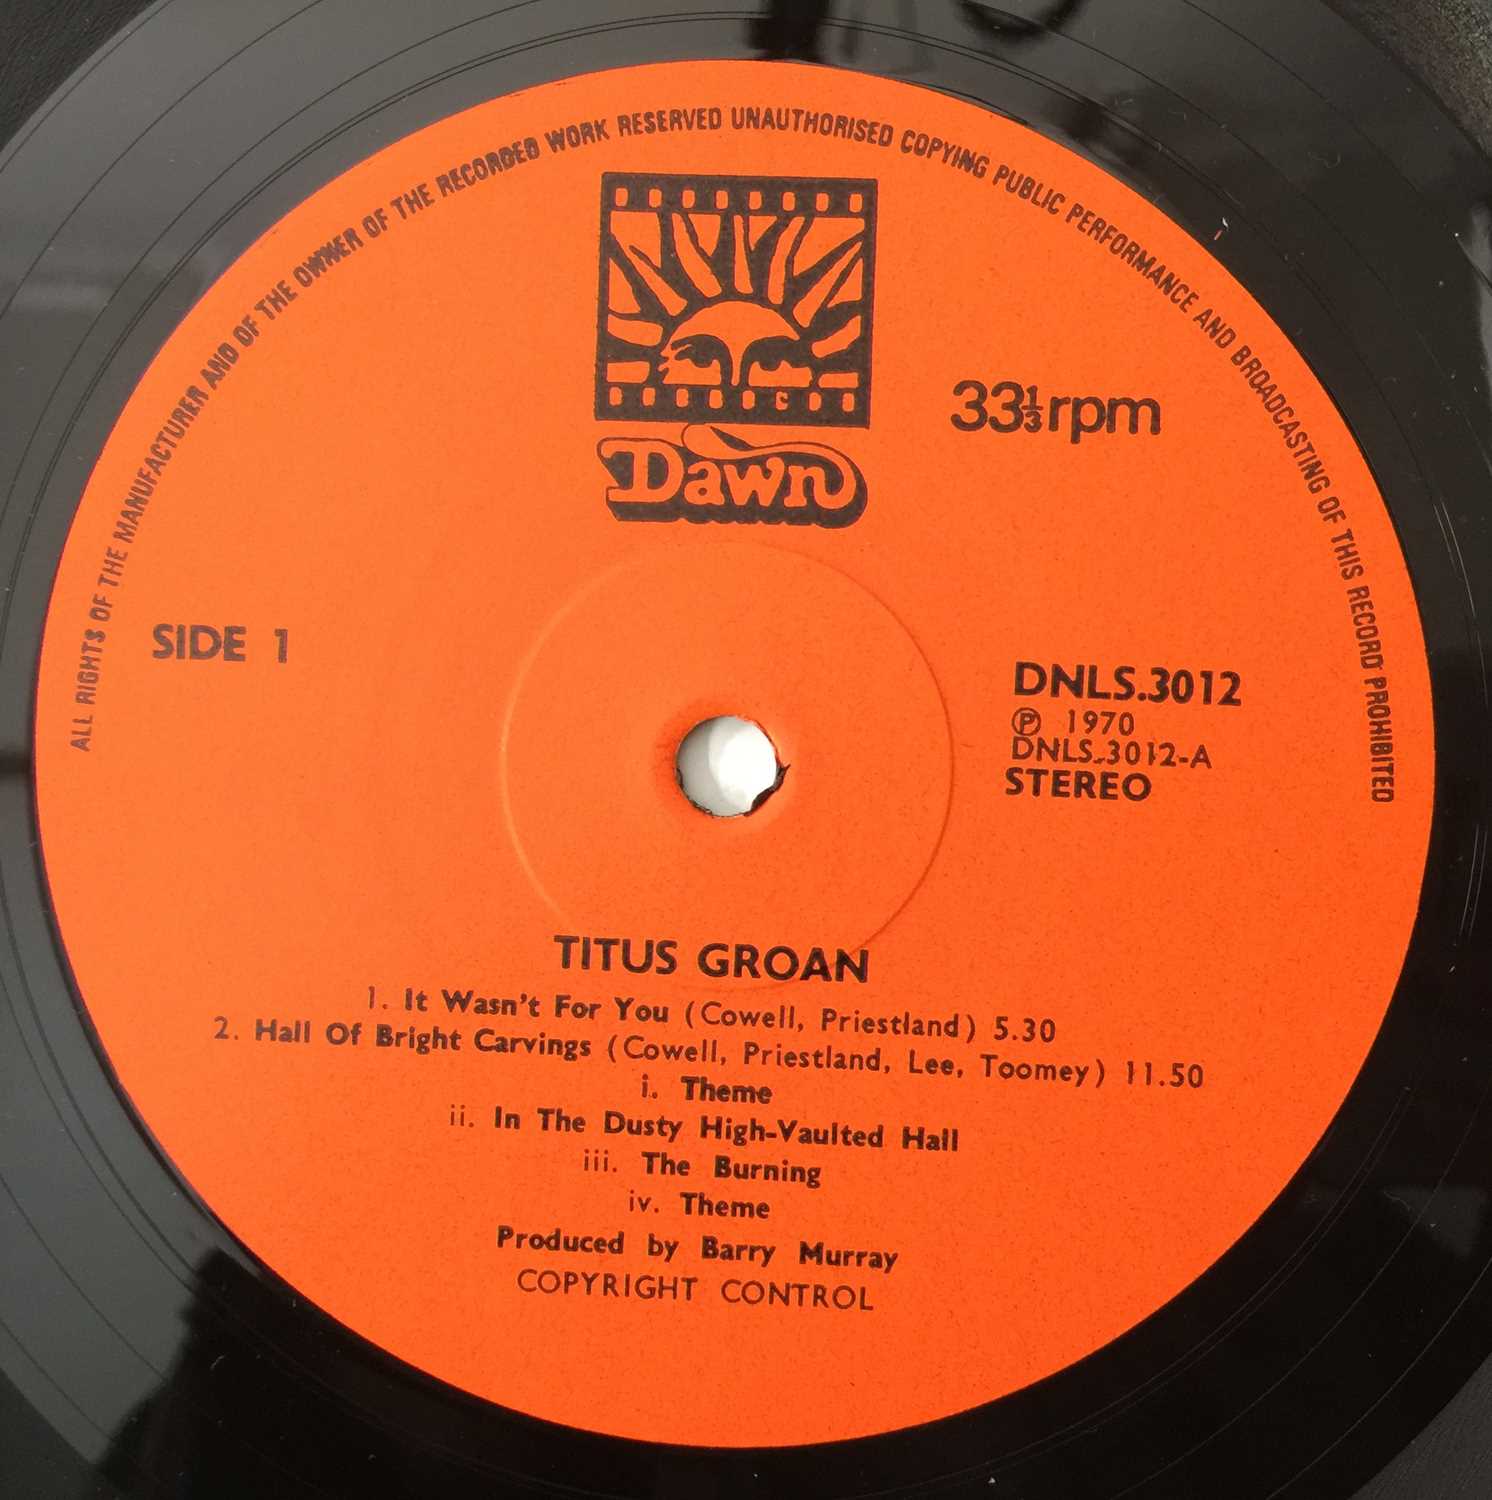 TITUS GROAN - TITUS GROAN LP (UK ORIGINAL PRESSING - DNLS.3012) - Image 4 of 5